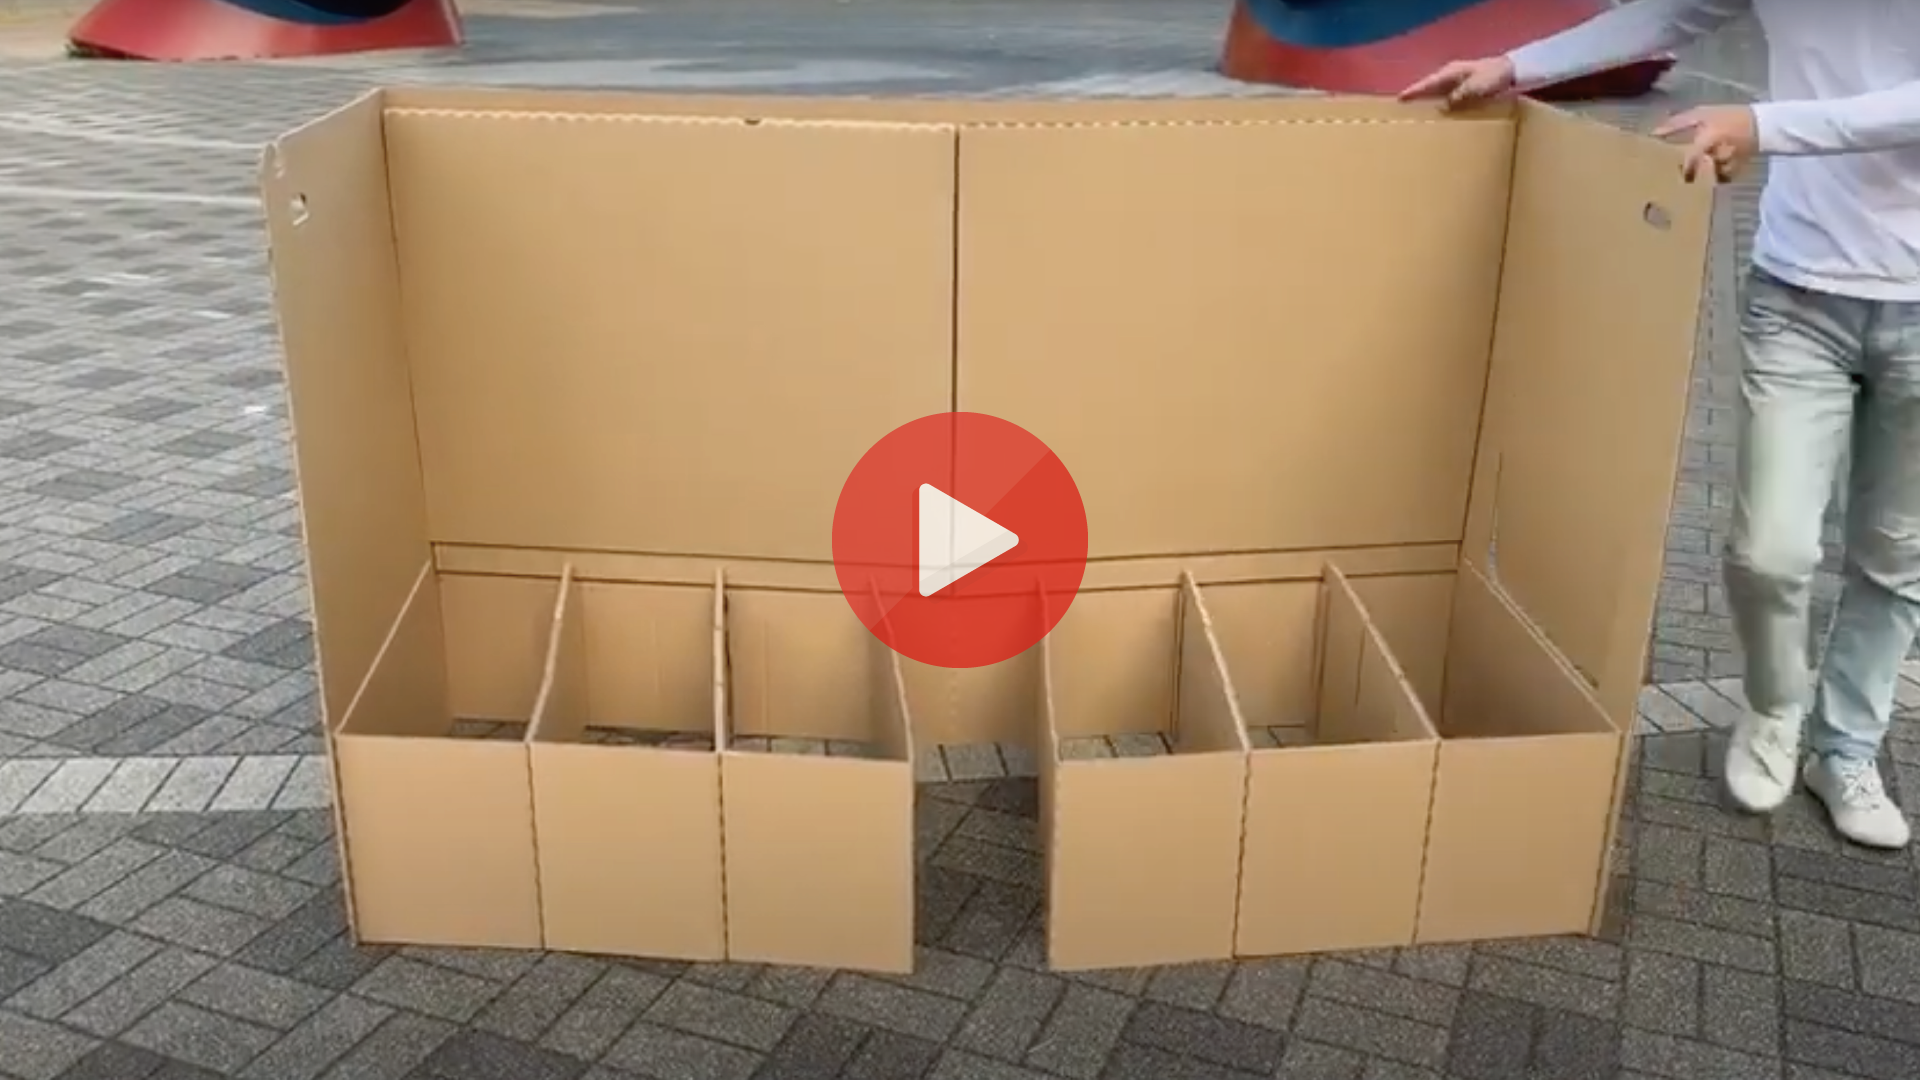 約1分で組み立てられる段ボールベッド『ひらいてポン』組立動画サムネイル